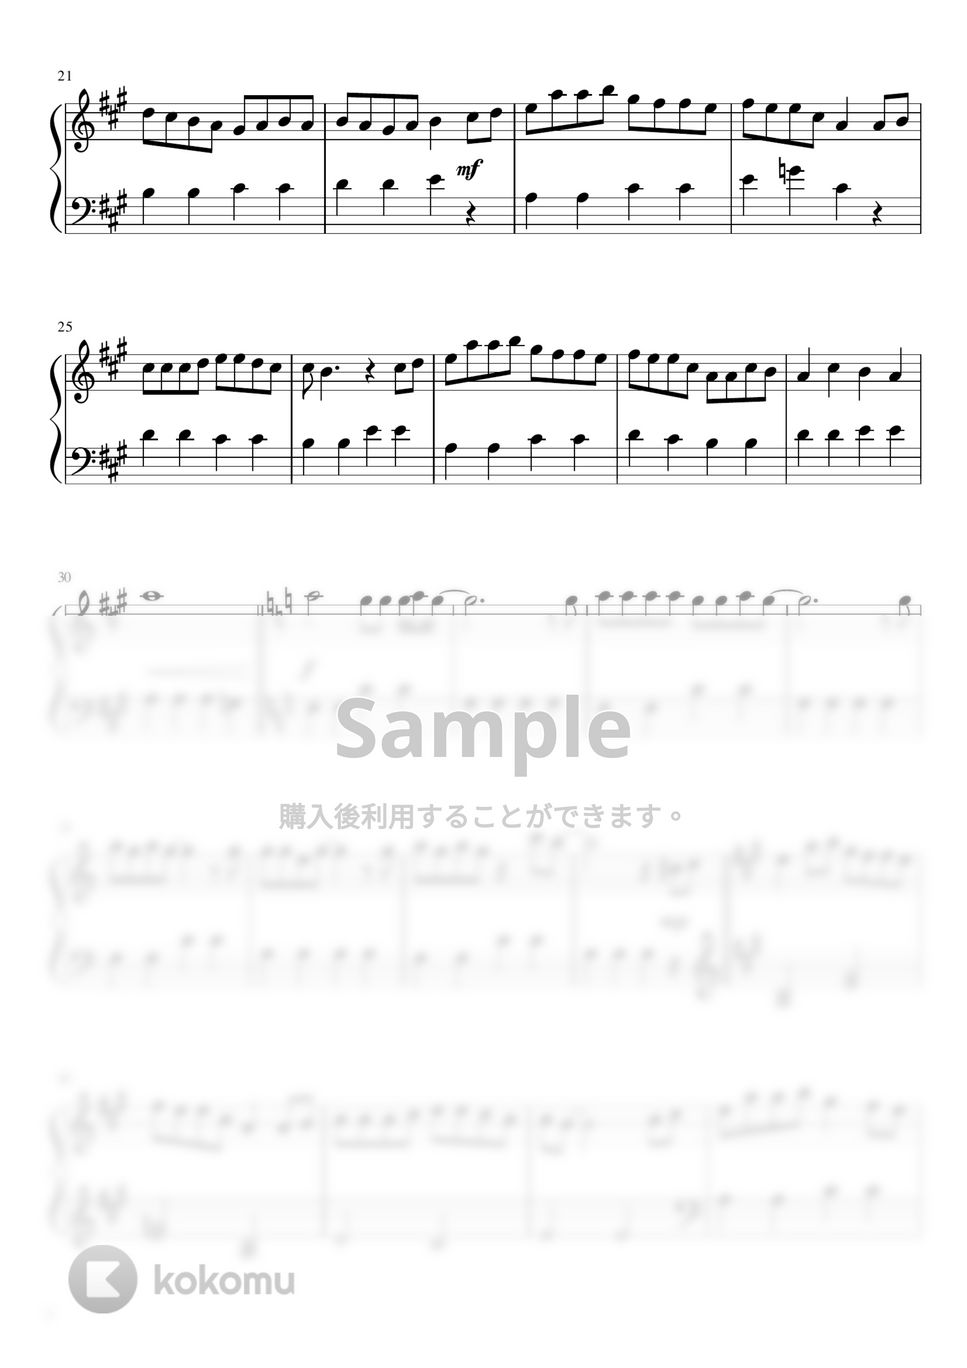 ポケットモンスター / 松本梨香 - めざせポケモンマスター (簡単ピアノ / ショートバージョン) by さく山P